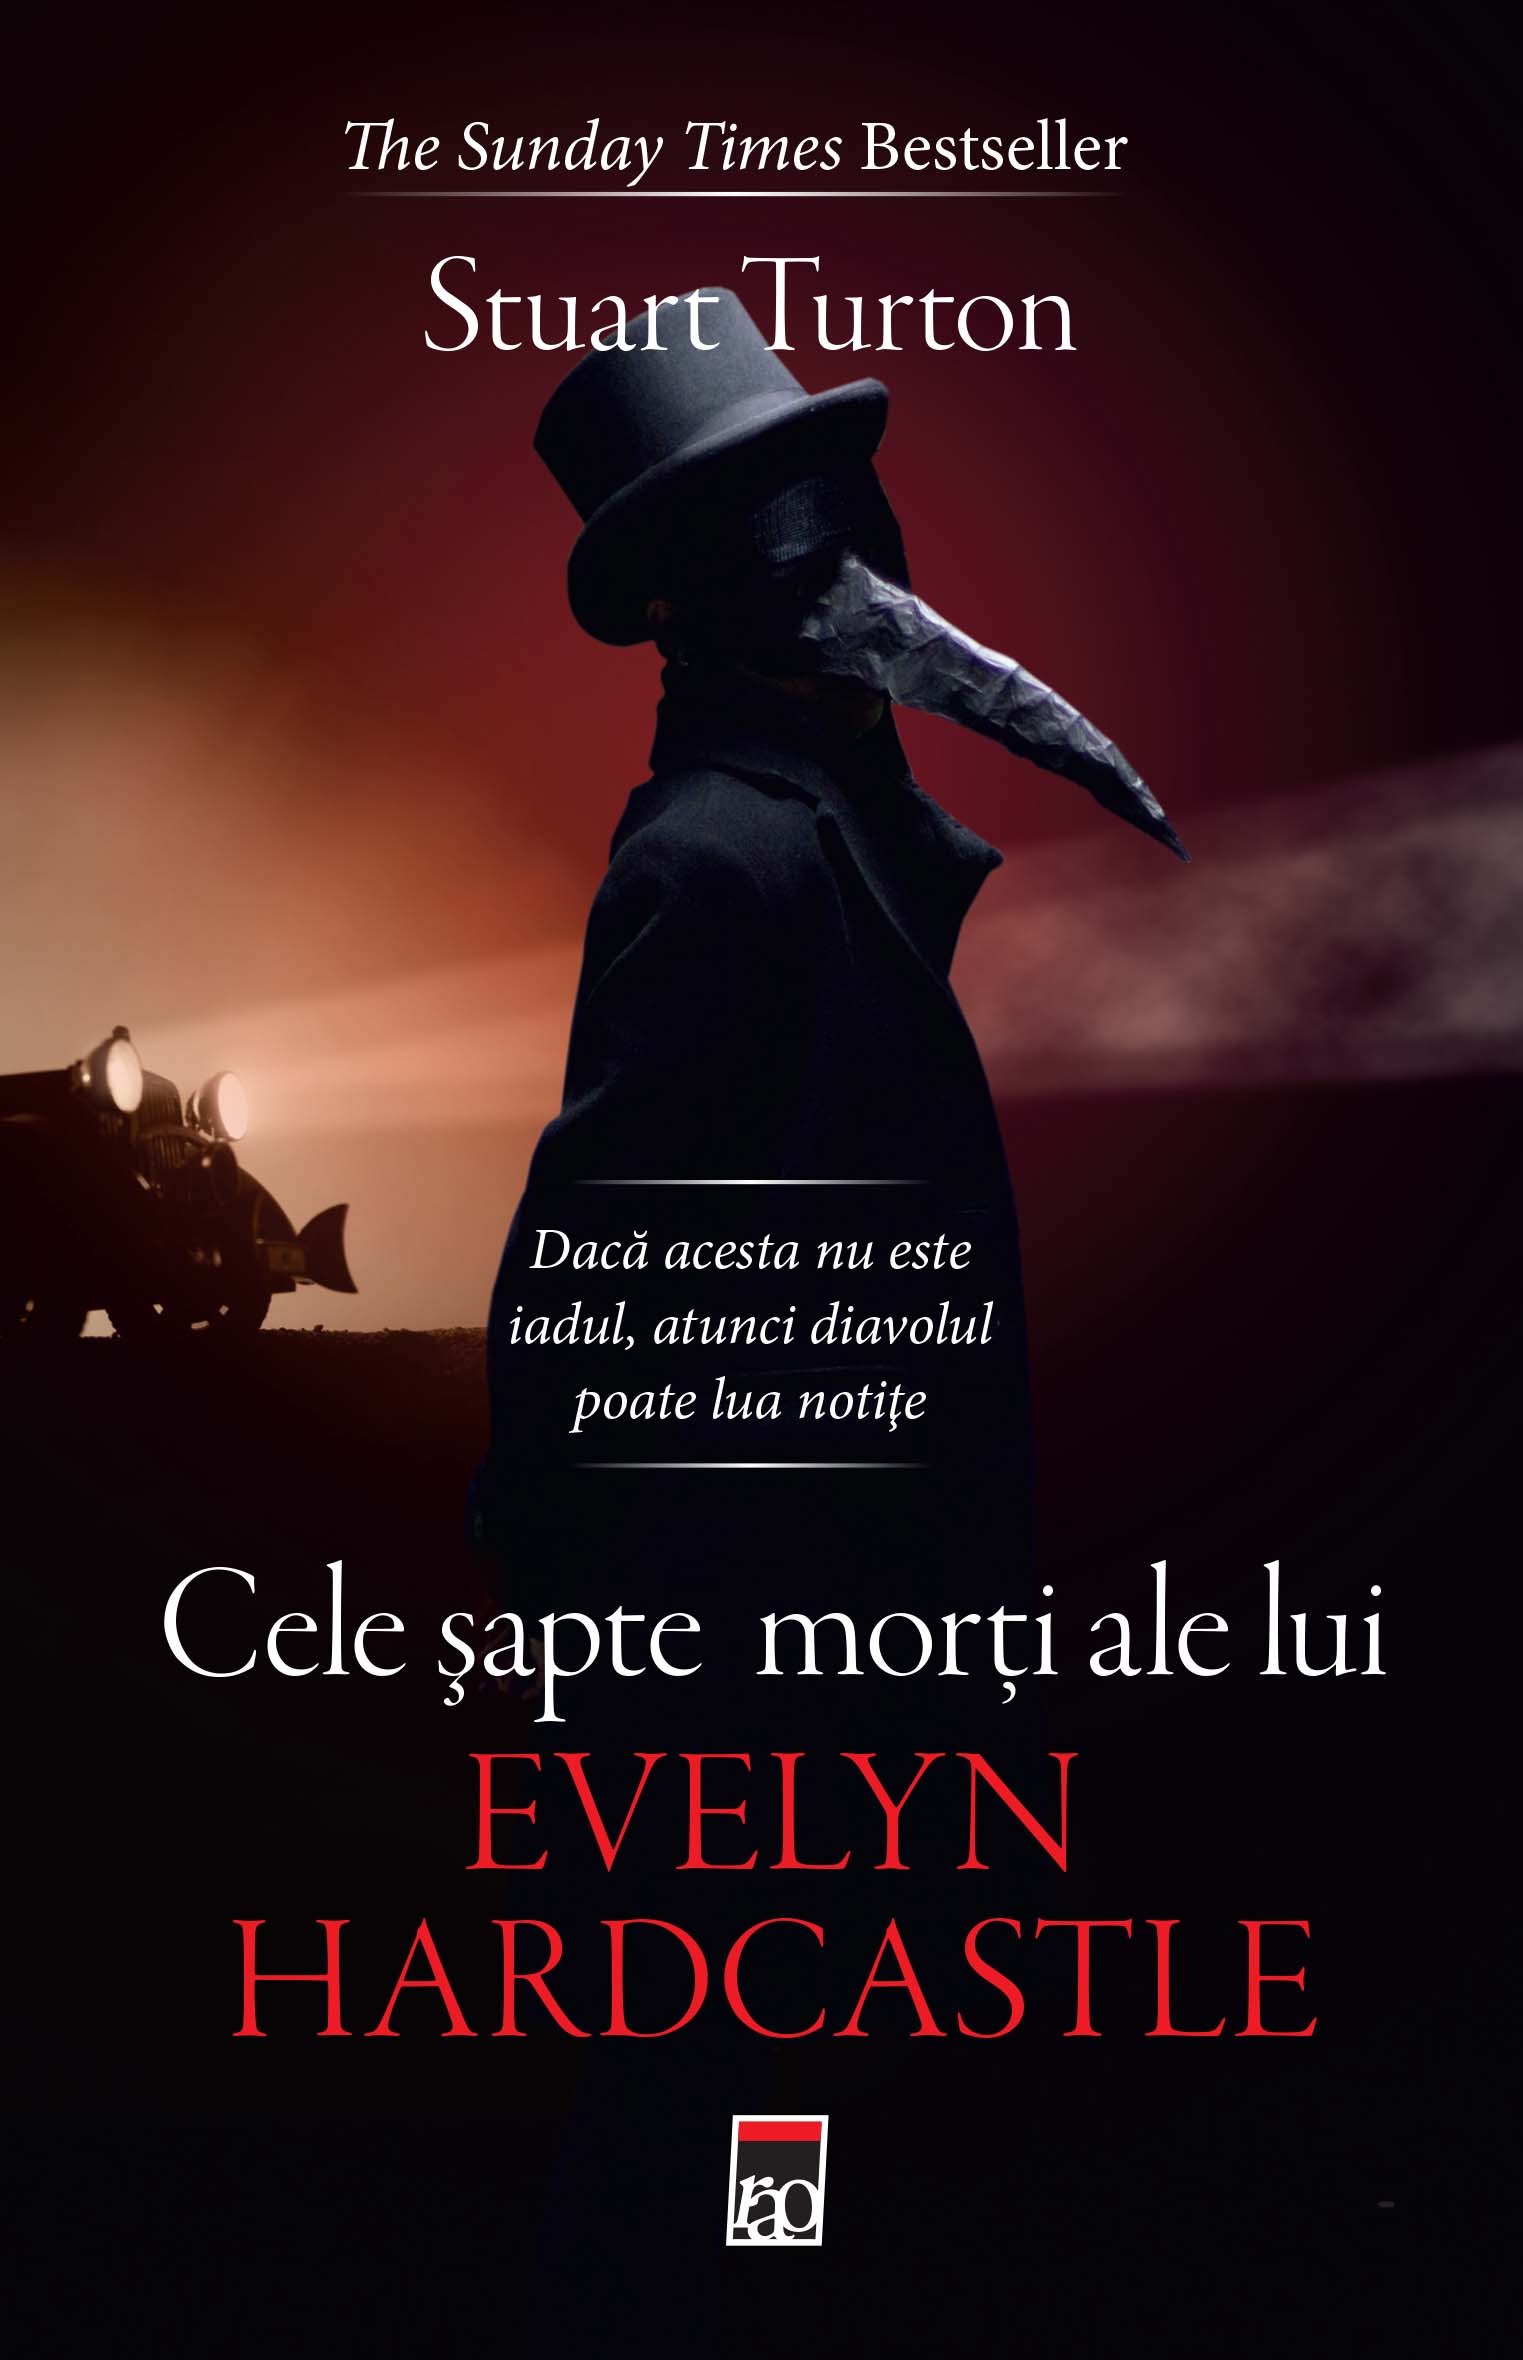 Le sette morti di Evelyn Hardcastle: la punizione dell'eterno ritorno